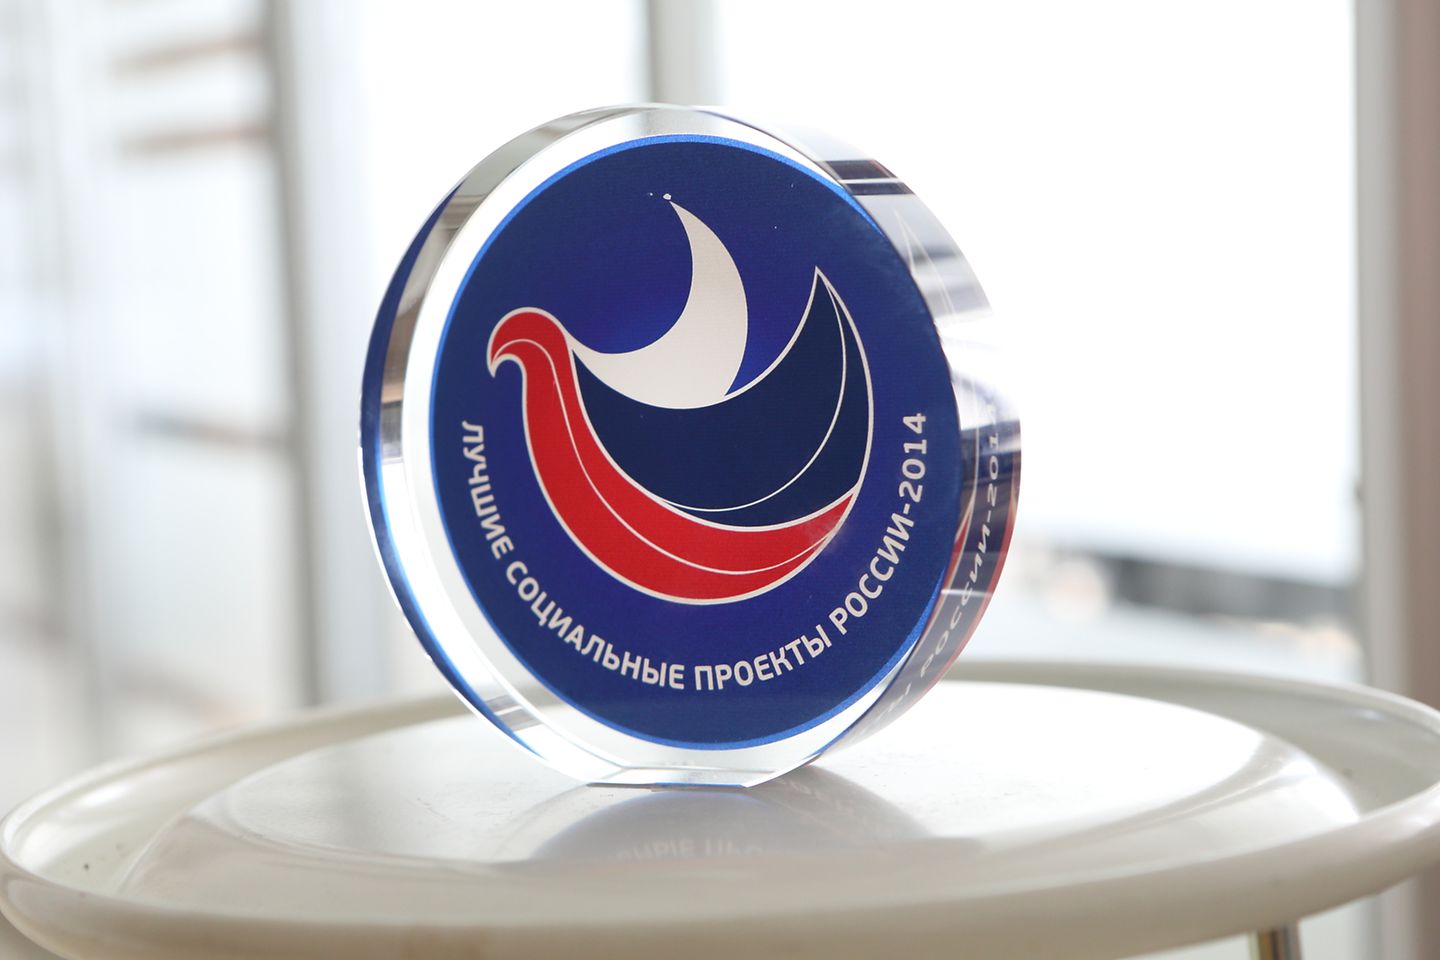 2015-03-19 Инициатива «Мир исследователей» получила премию «Лучшие социальные проекты России» в 2014 году-2